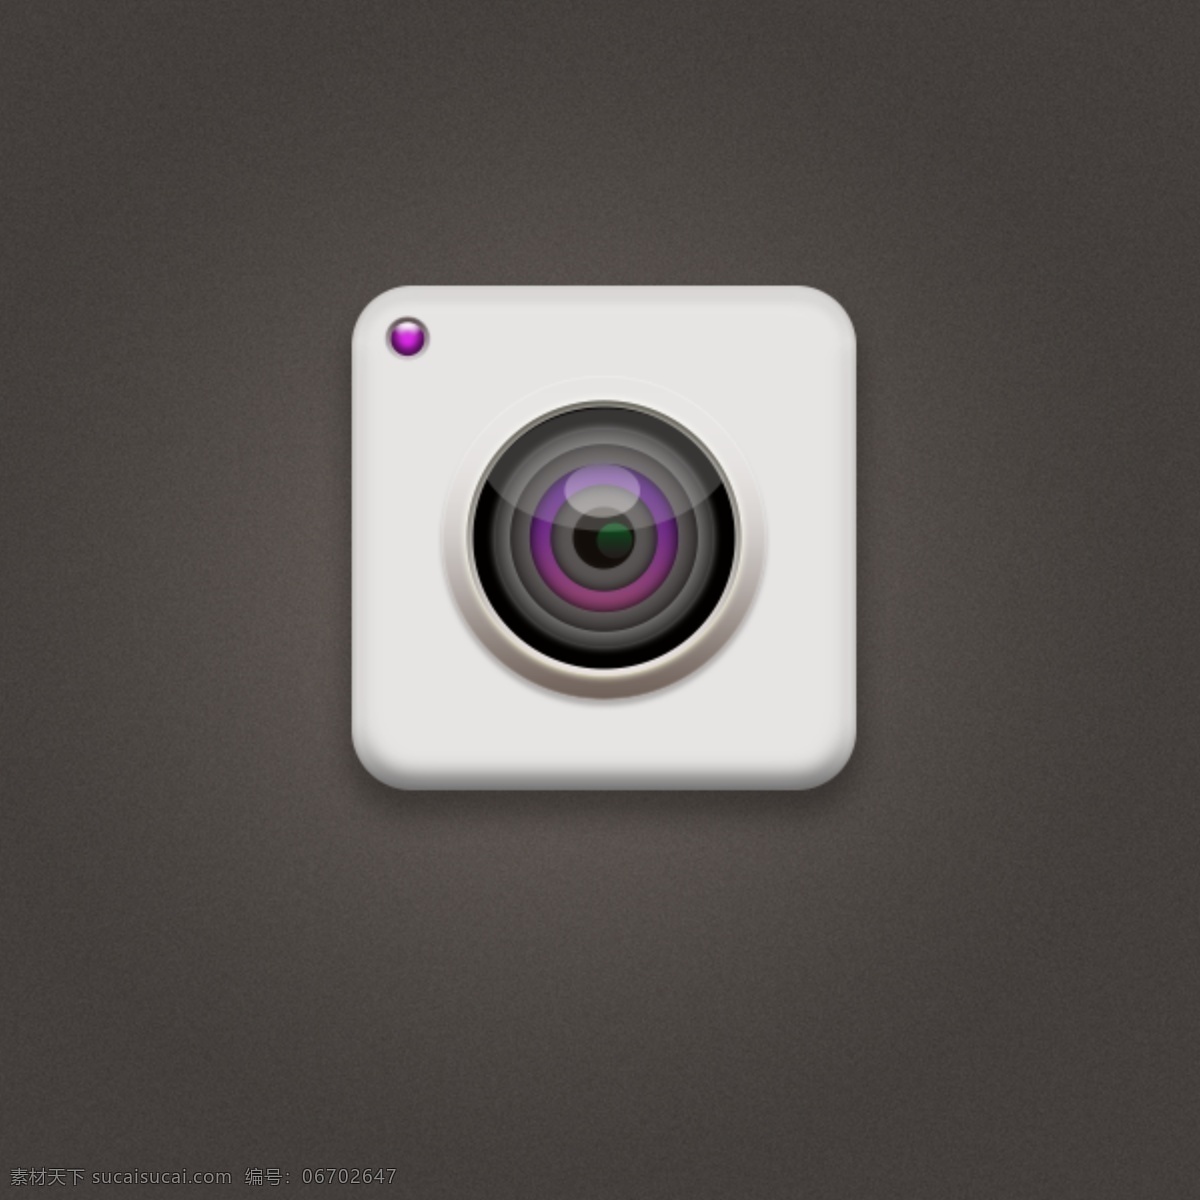 相机 ui icon 标志 图标 立体 相机图标 渐变 ui设计 手机 app ui界面设计 灰色